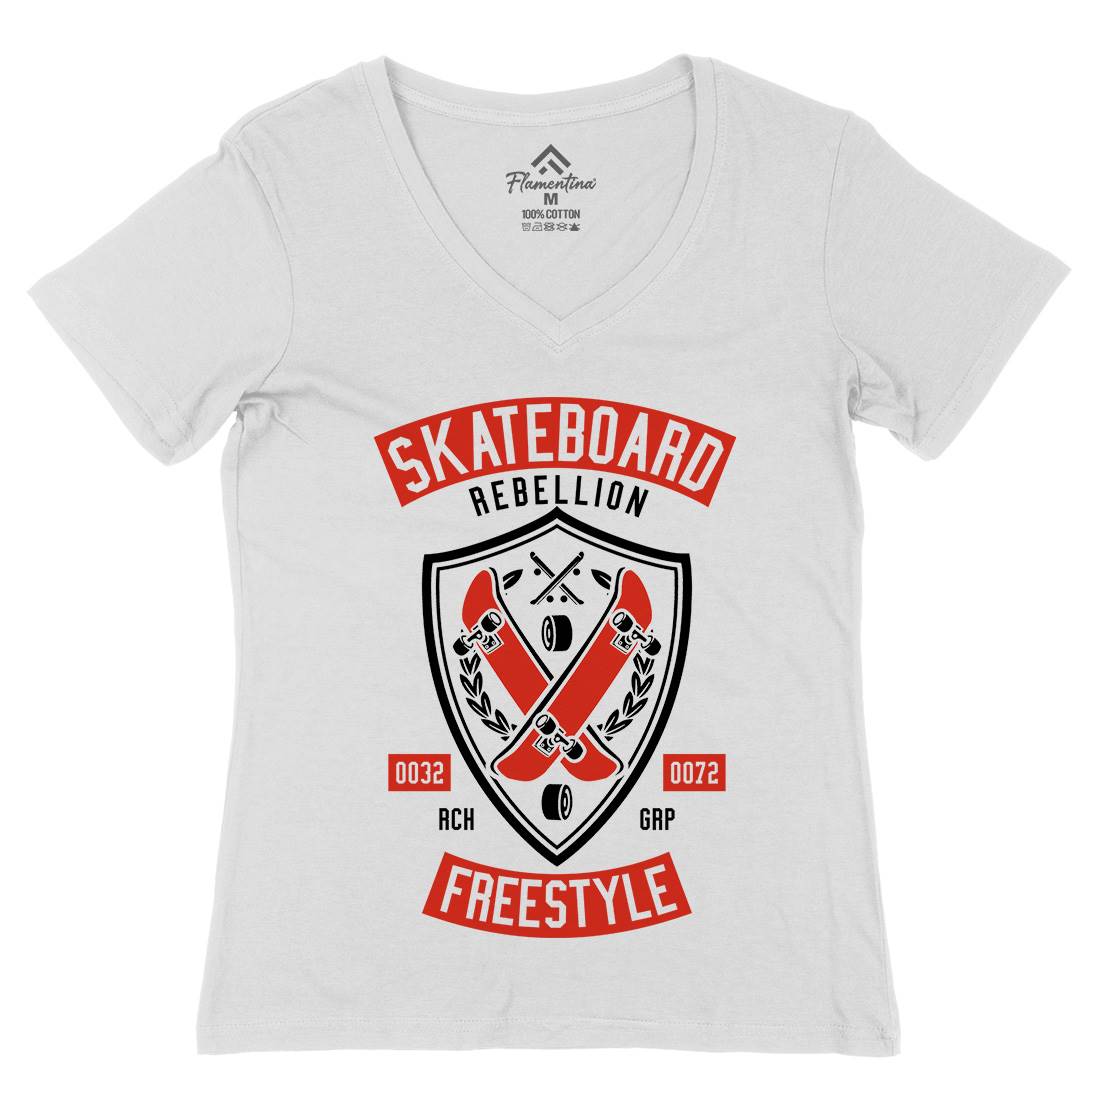 Skateboard Rebellion Womens Organic V-Neck T-Shirt Skate A277